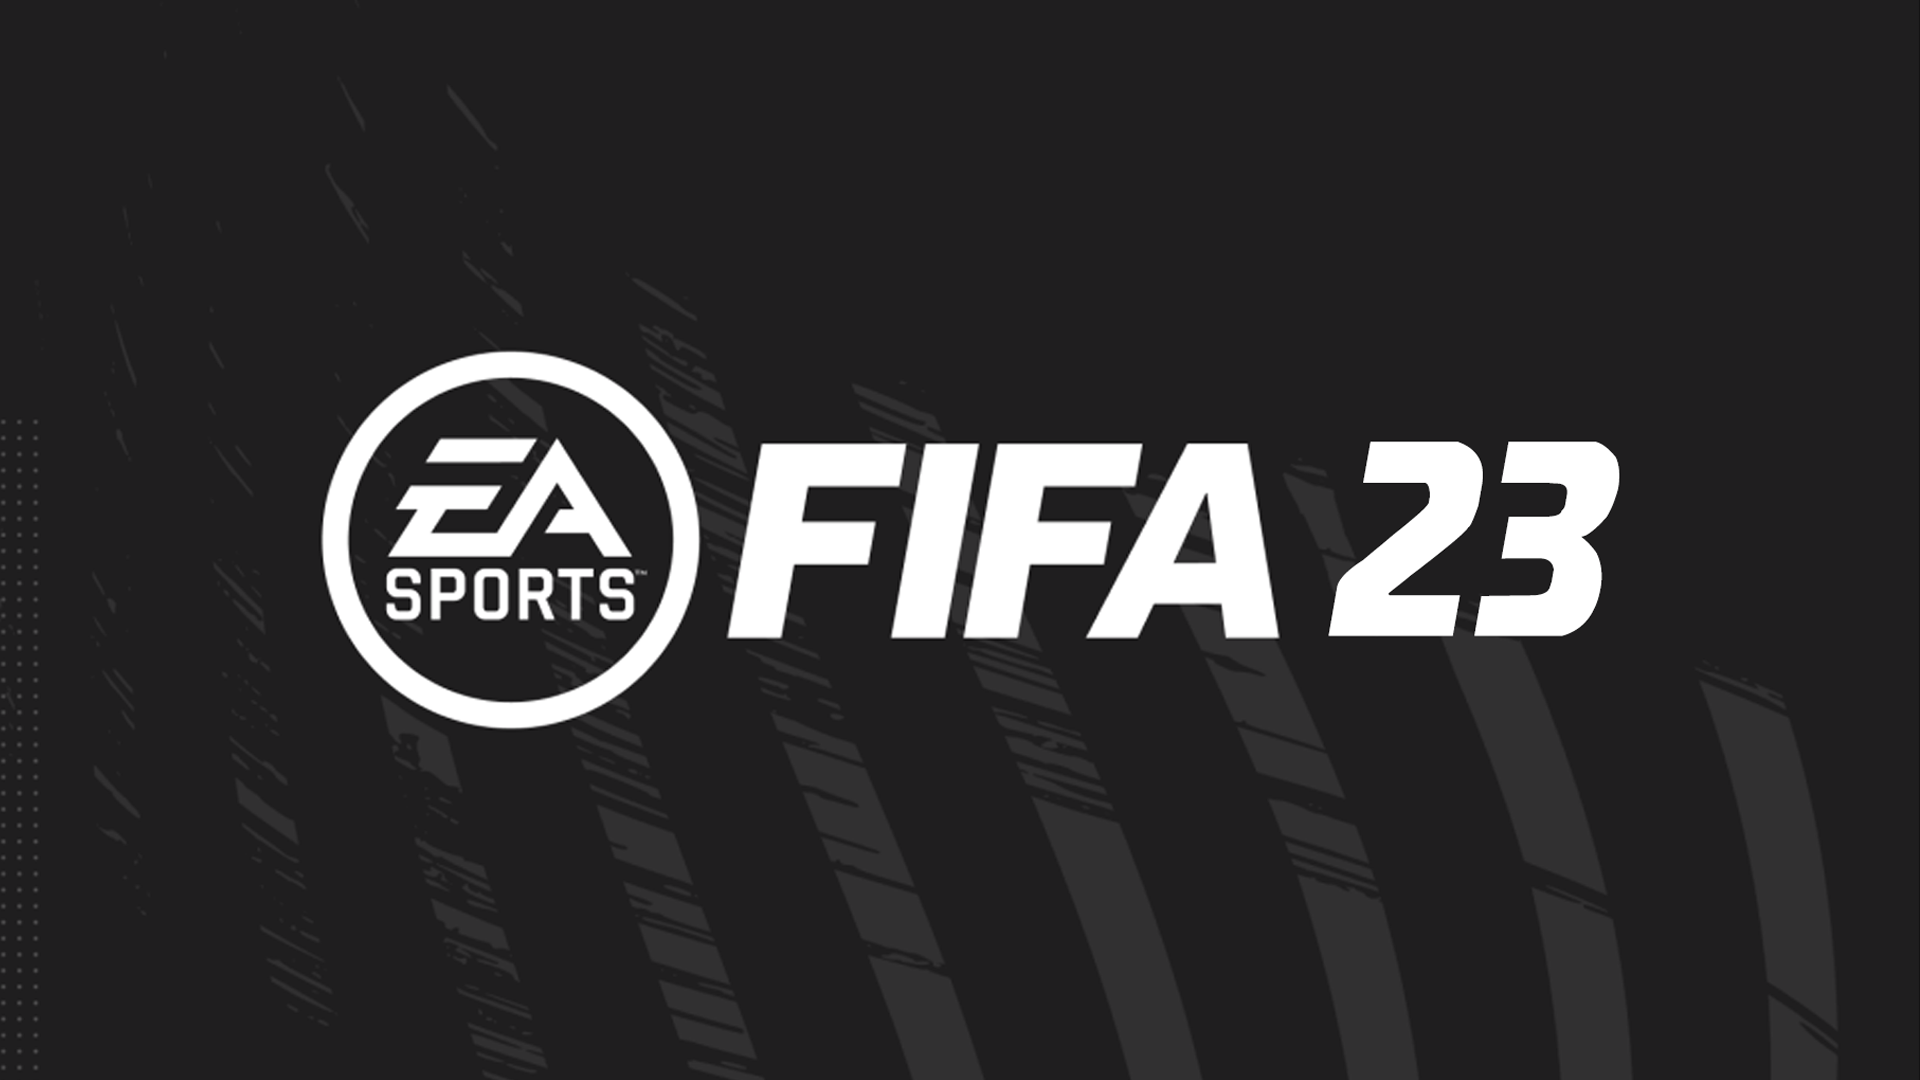 Tổng hợp 999 Black background FIFA 23 Chất lượng cao, tải miễn phí